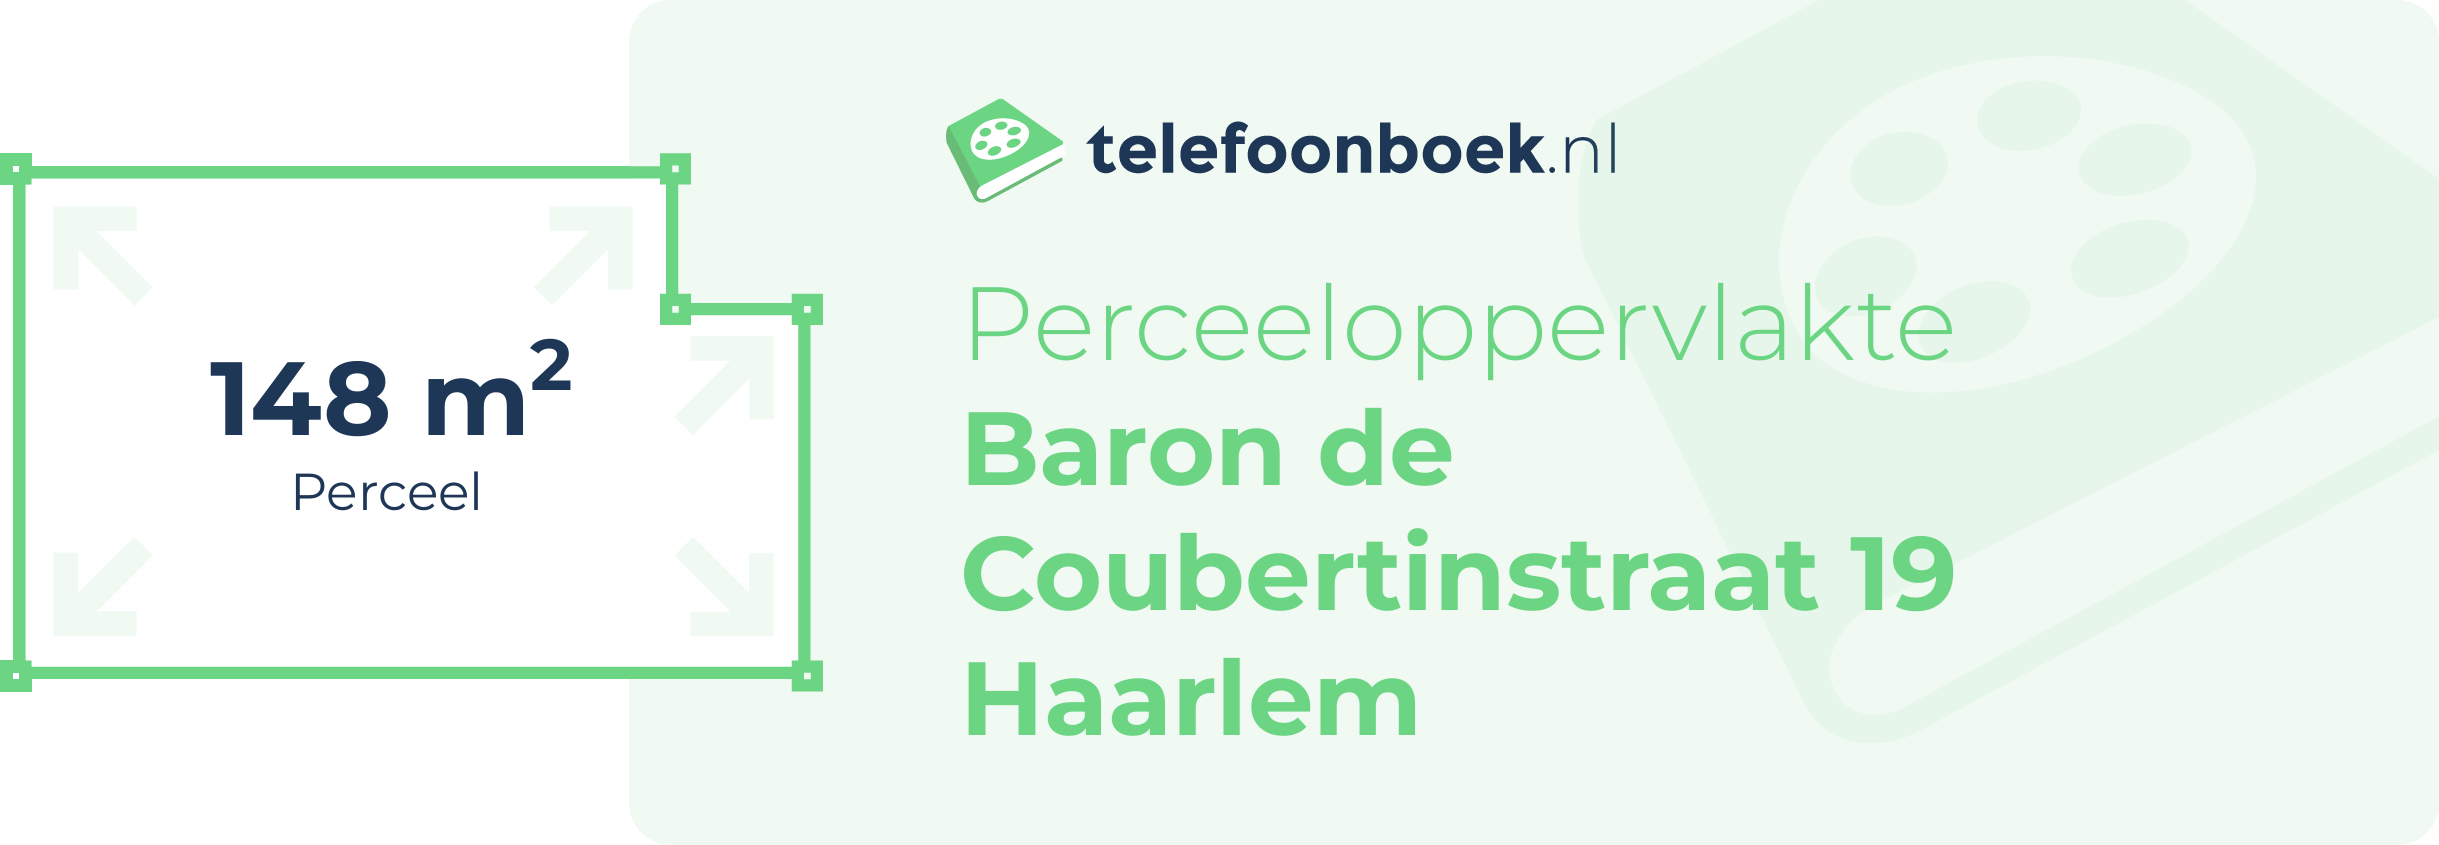 Perceeloppervlakte Baron De Coubertinstraat 19 Haarlem